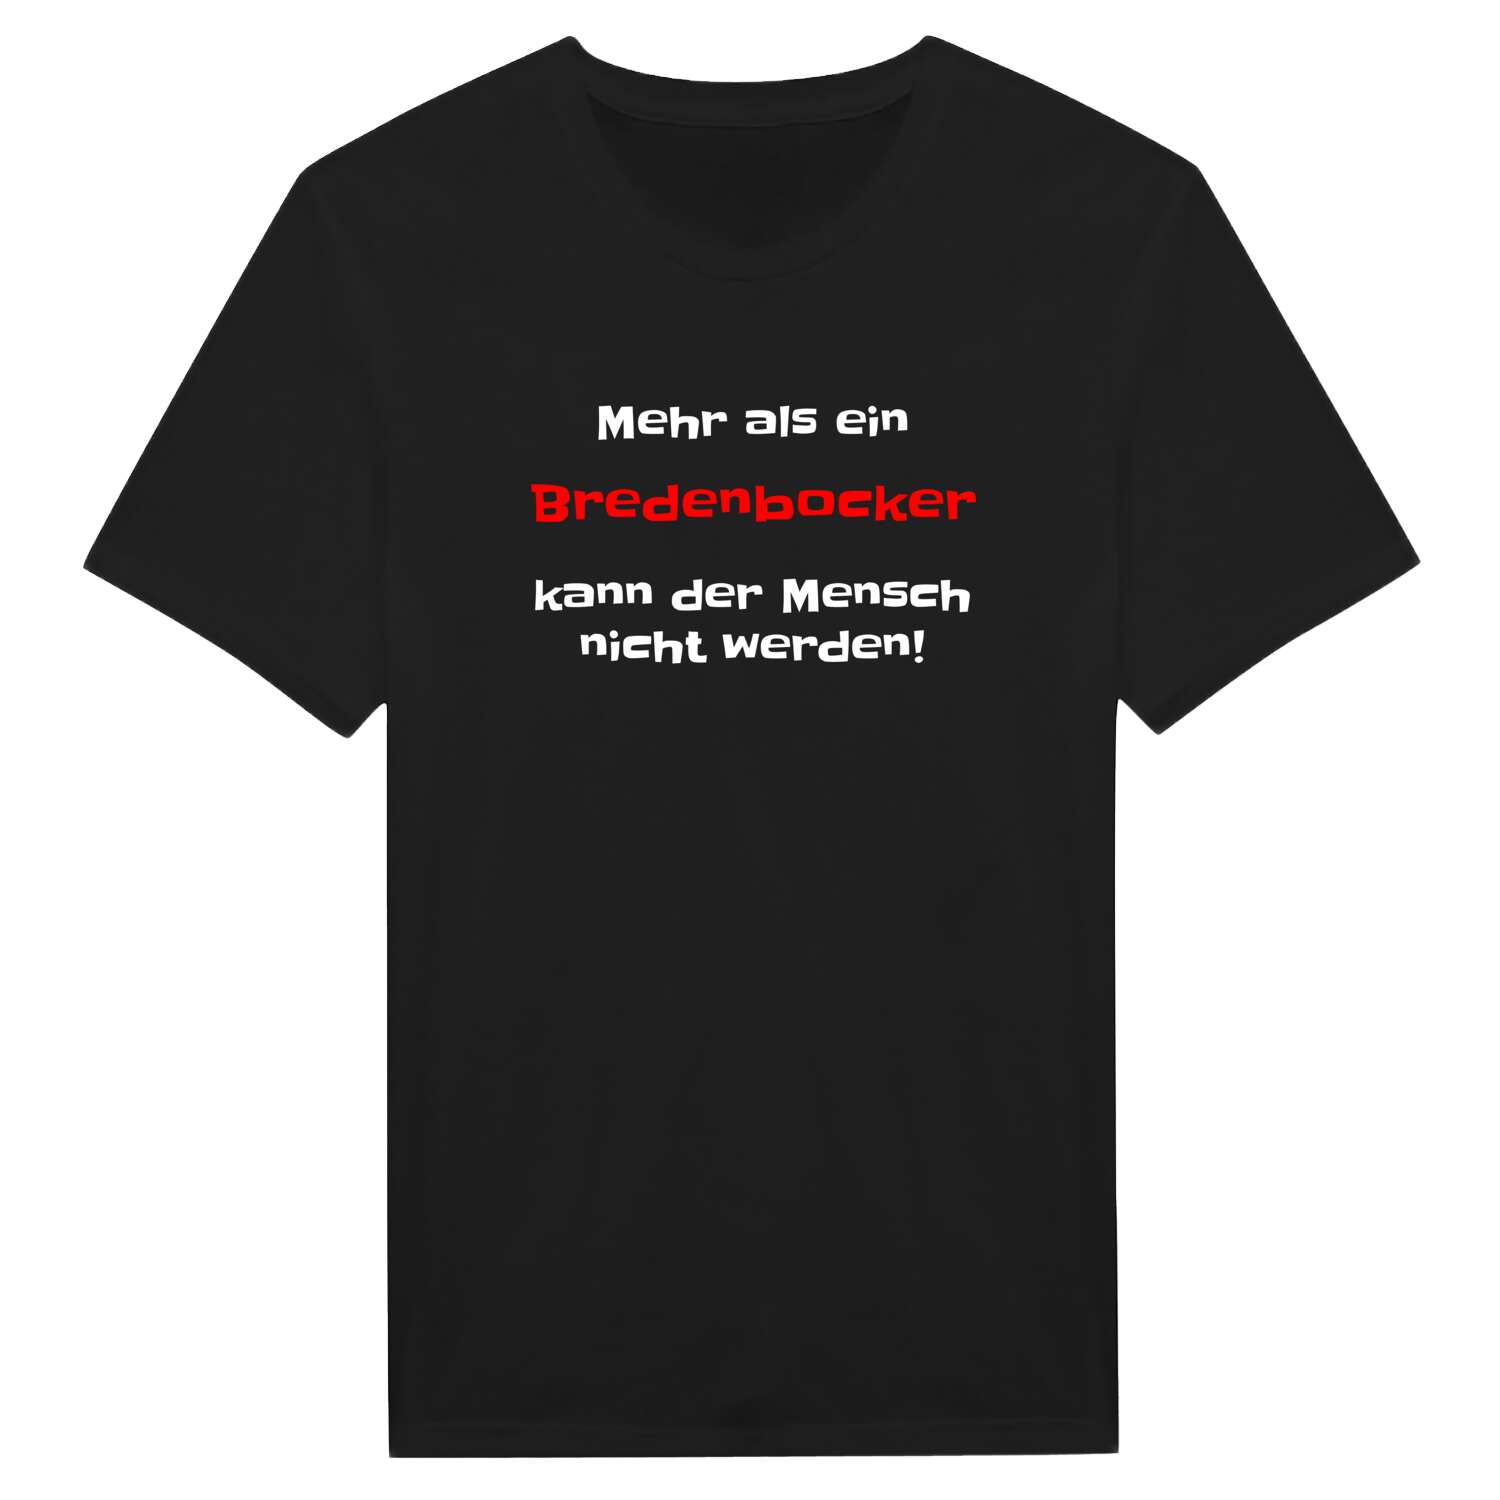 Bredenbock T-Shirt »Mehr als ein«